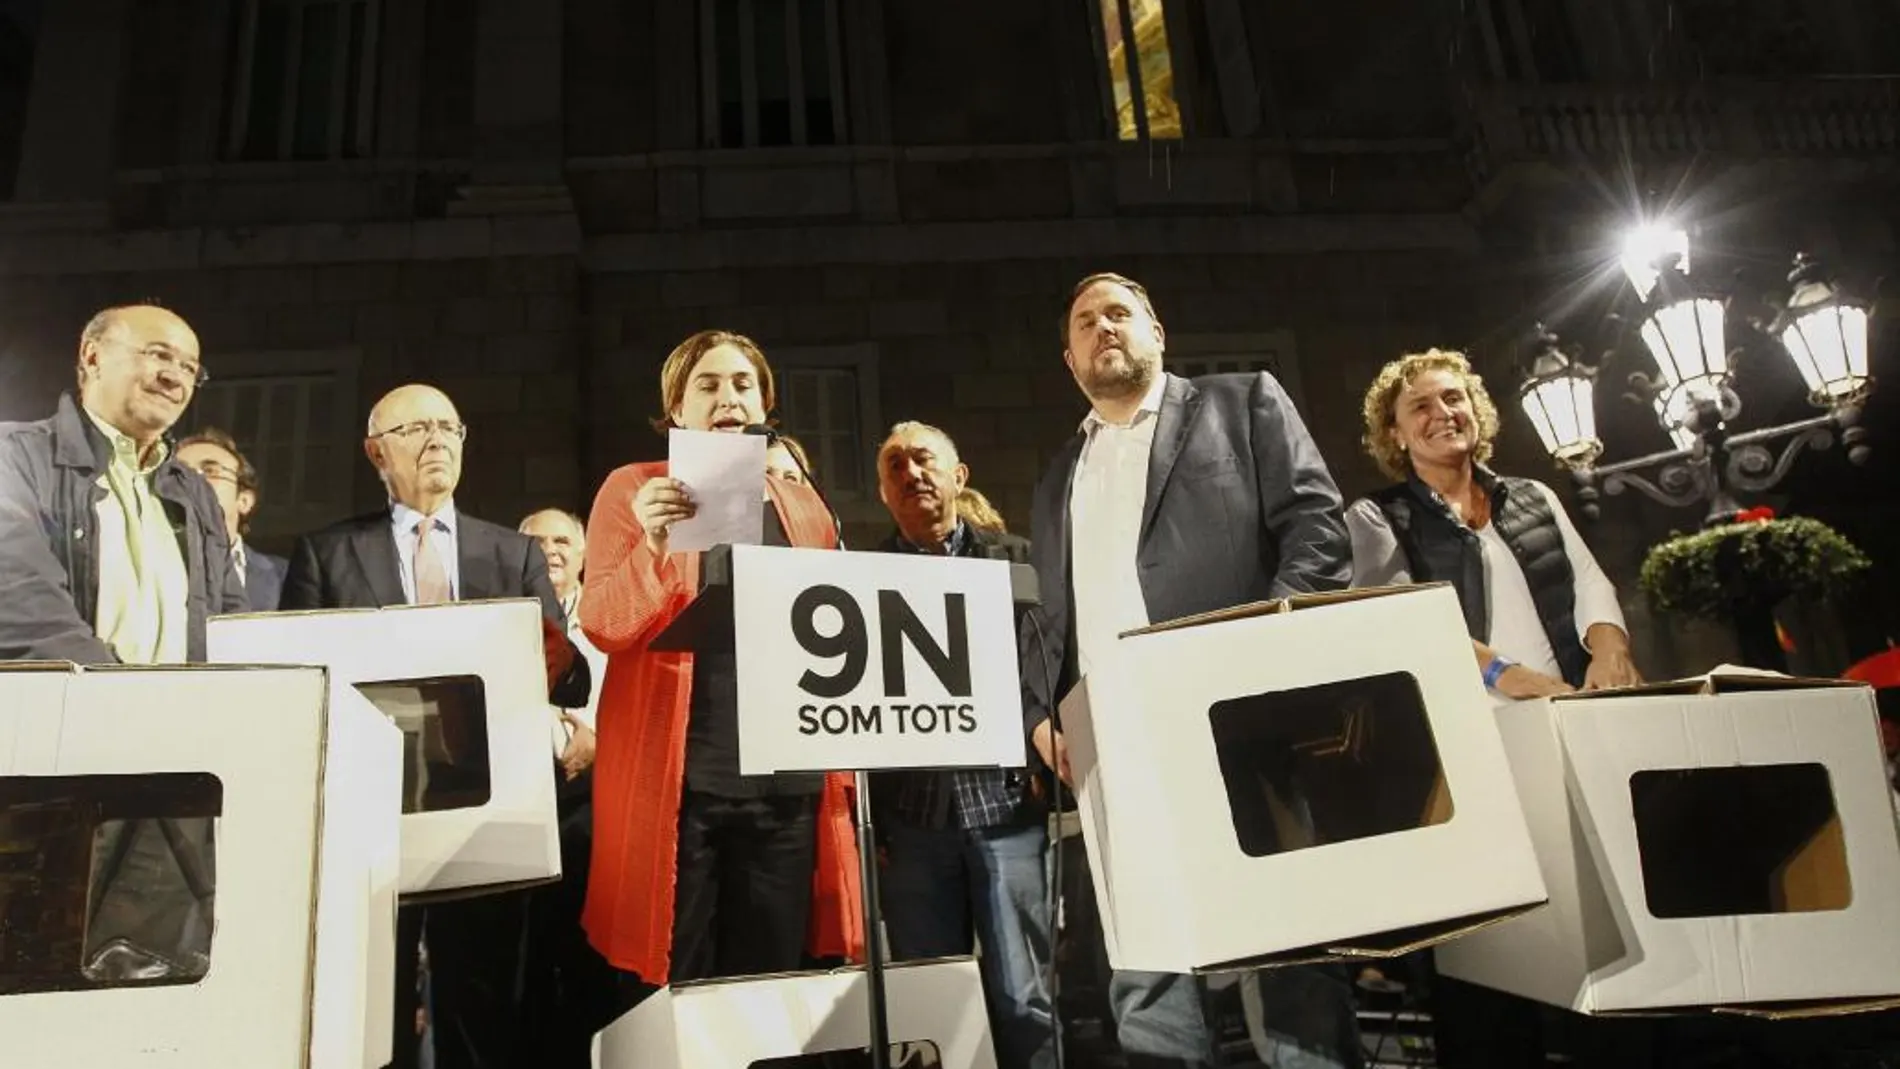 La alcaldesa de Barcelona, Ada Colau (i) , acompañada entre otros por el líder de ERC, Oriol Junqueras (d), lee esta tarde en la plaza Sant Jaume el manifiesto contra las querellas "antidemocráticas"